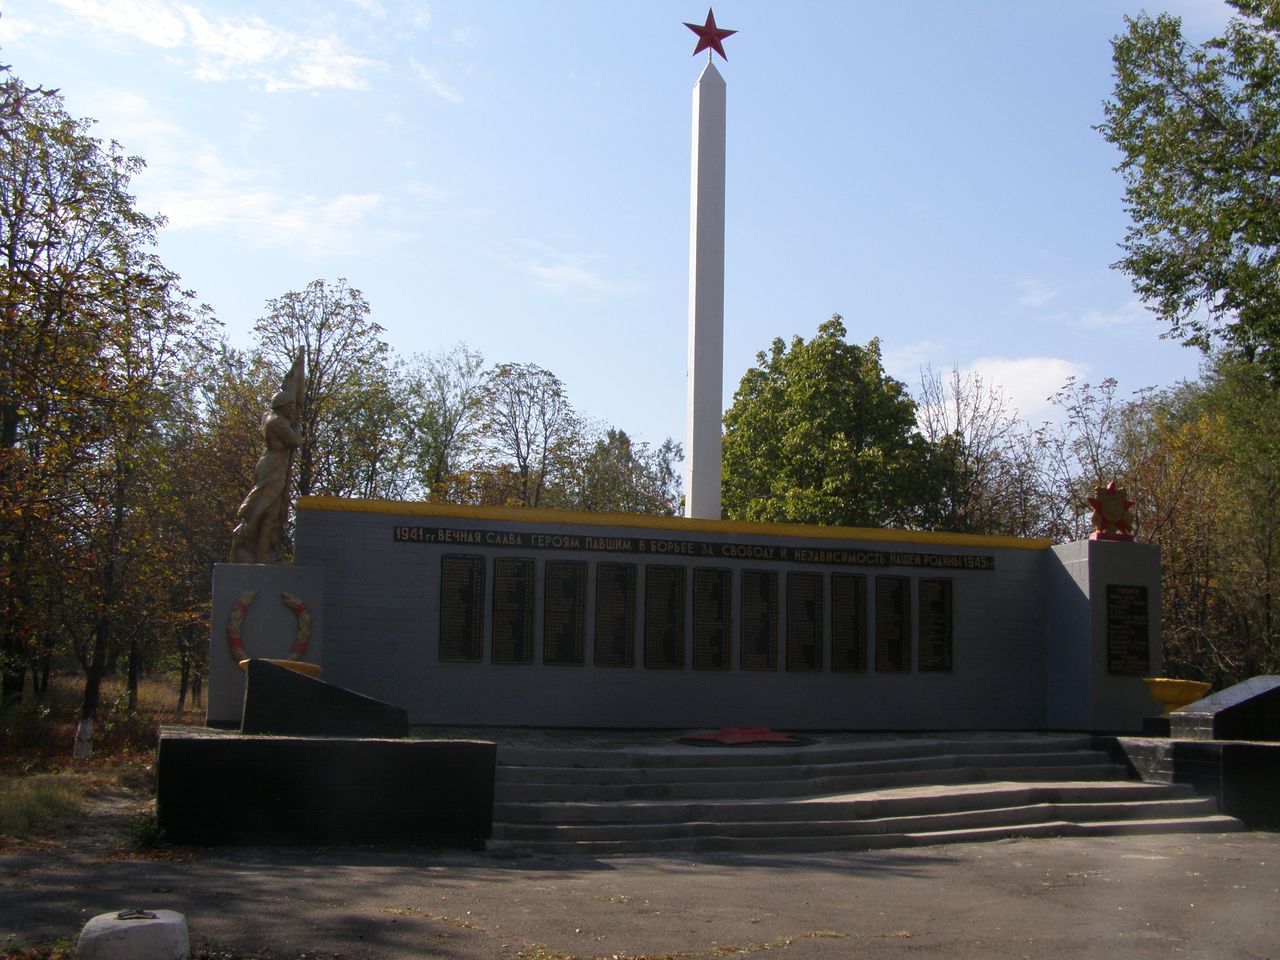 Братская могила в с. Павловка Марьинского района